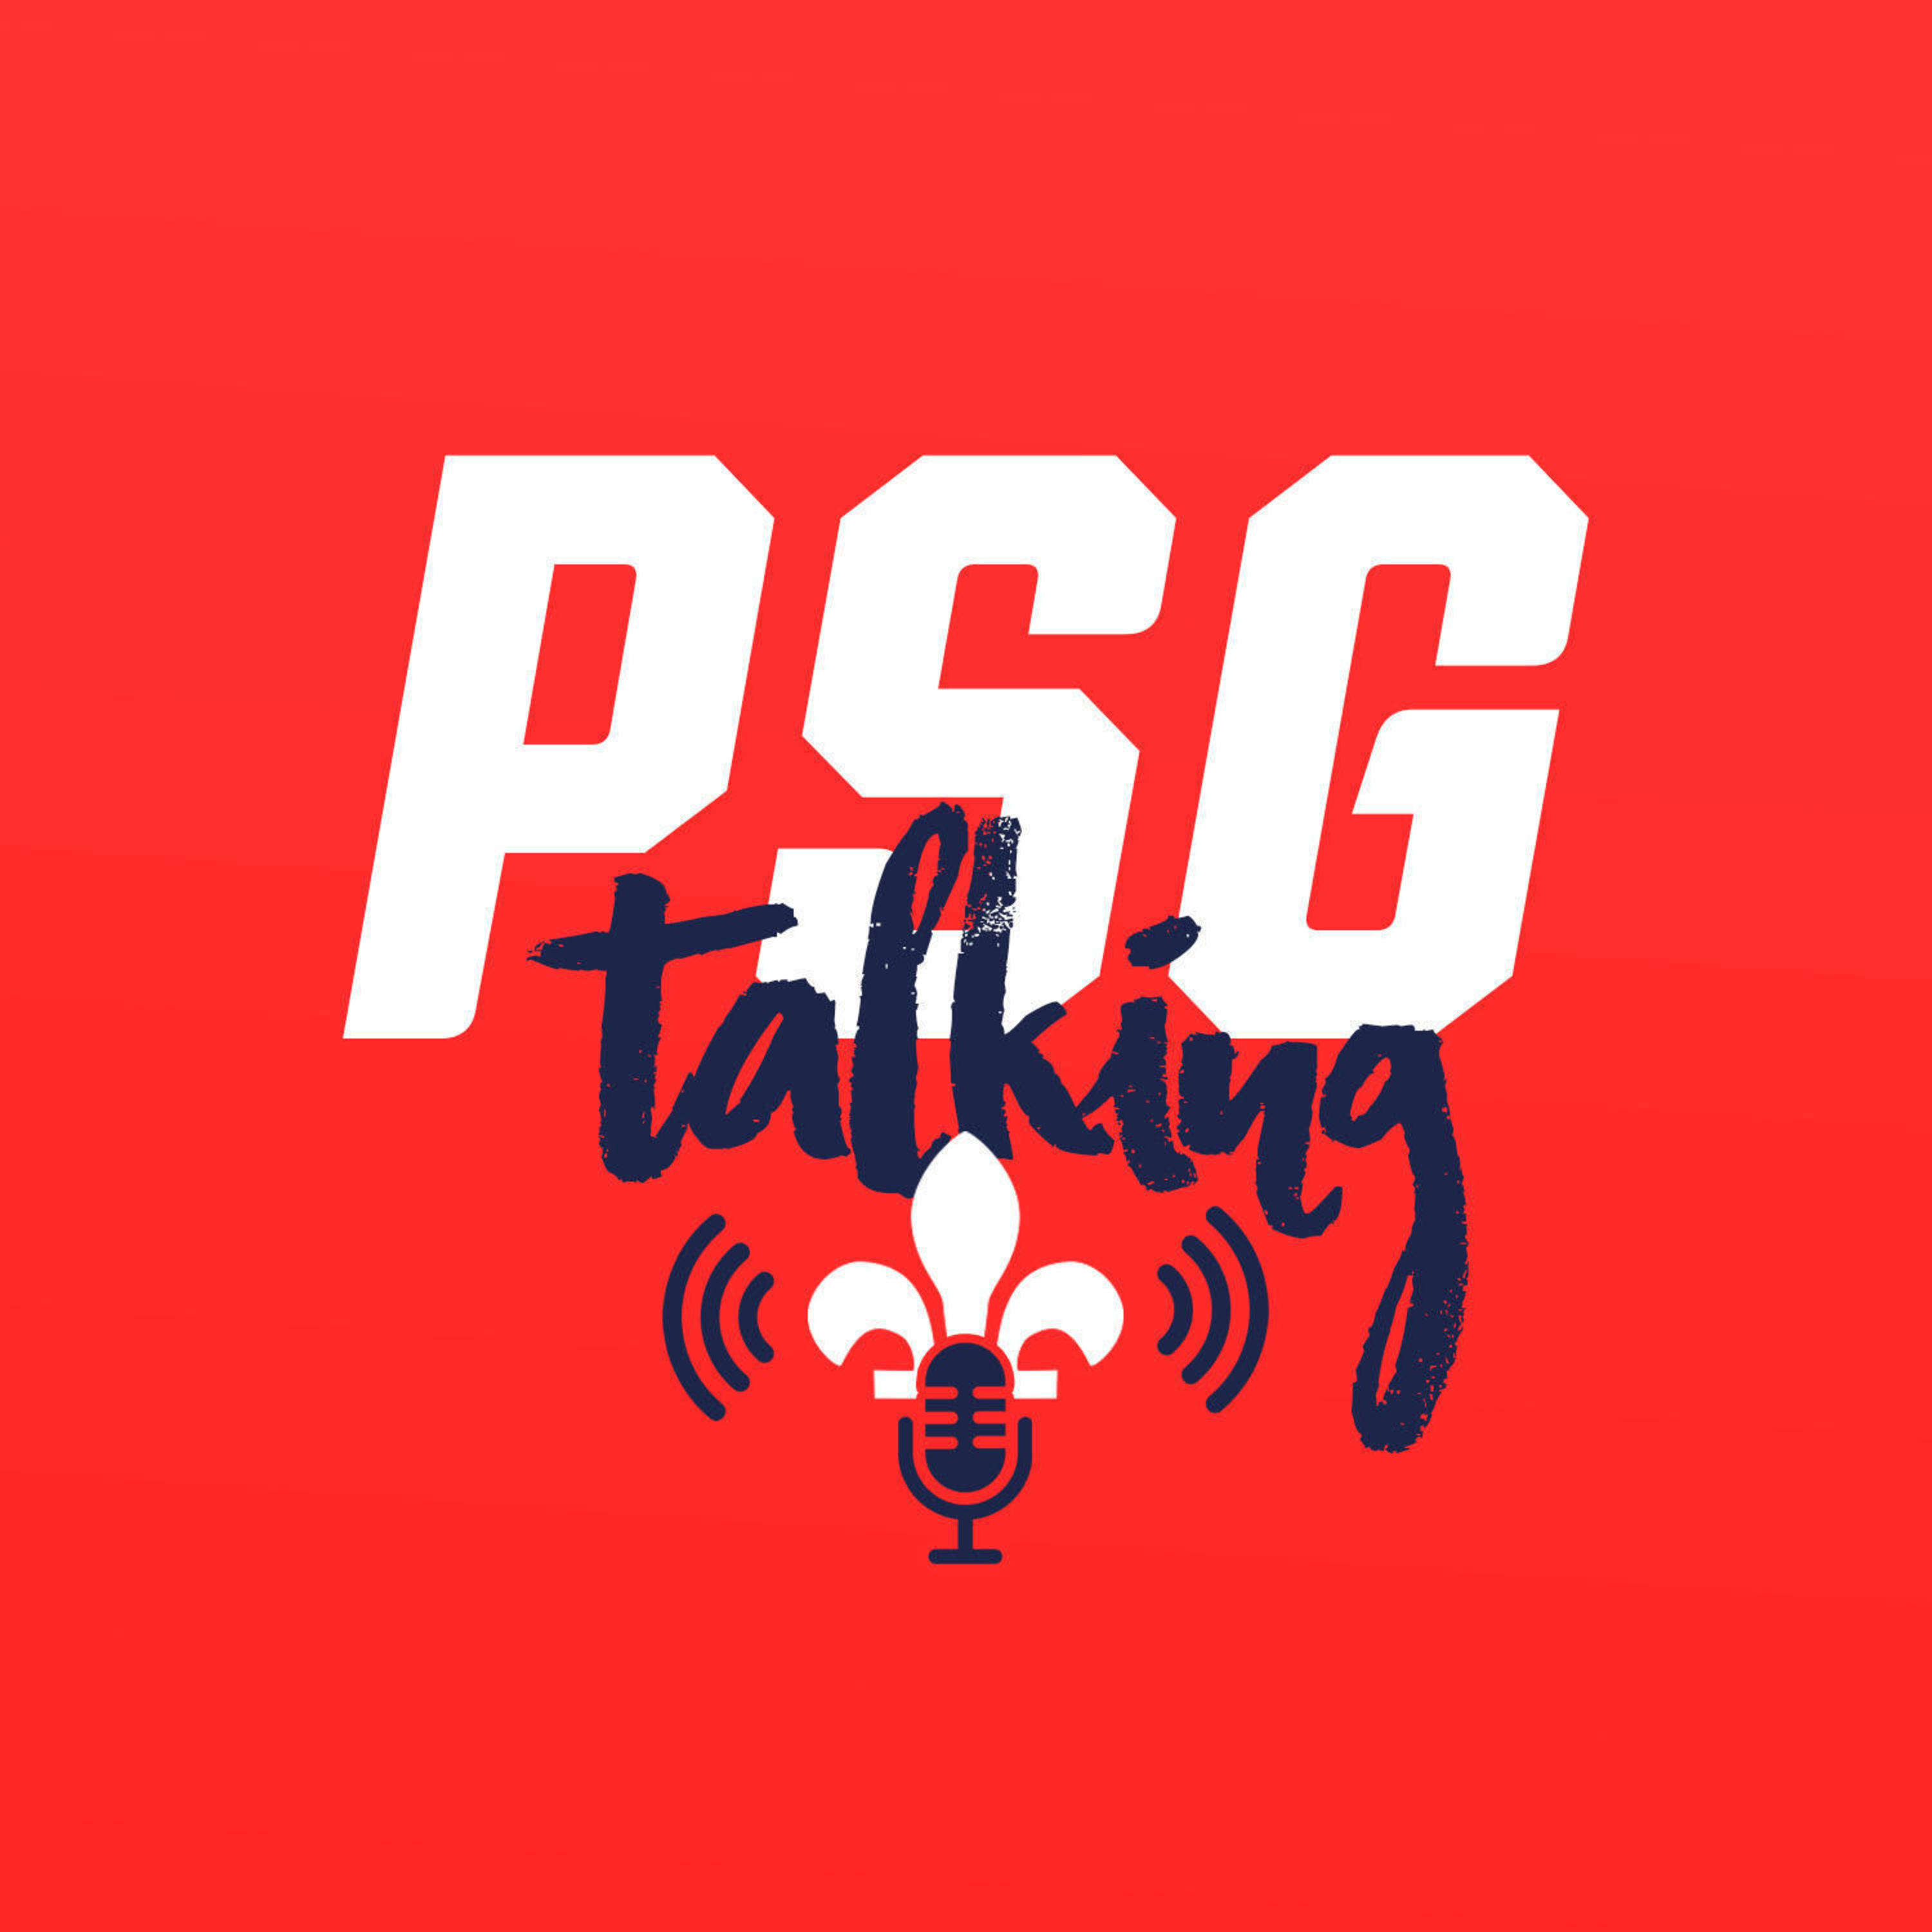 Artwork for podcast PSG Talking